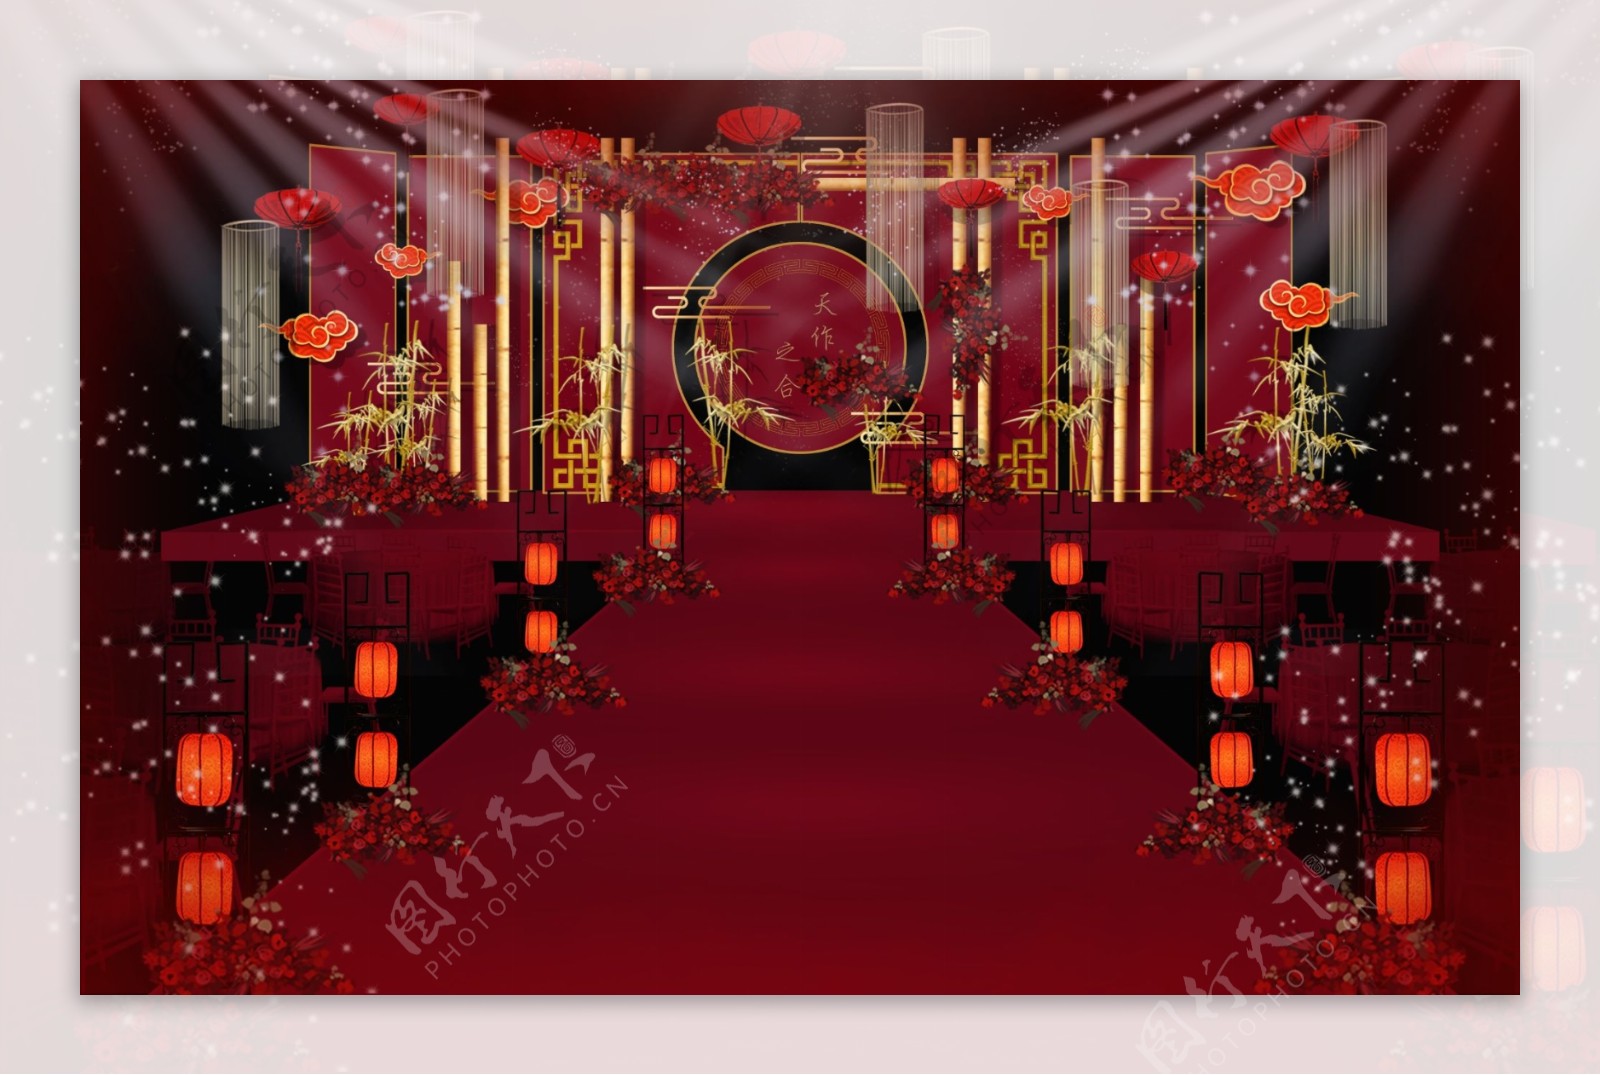 传统红色中国风中式婚礼效果图